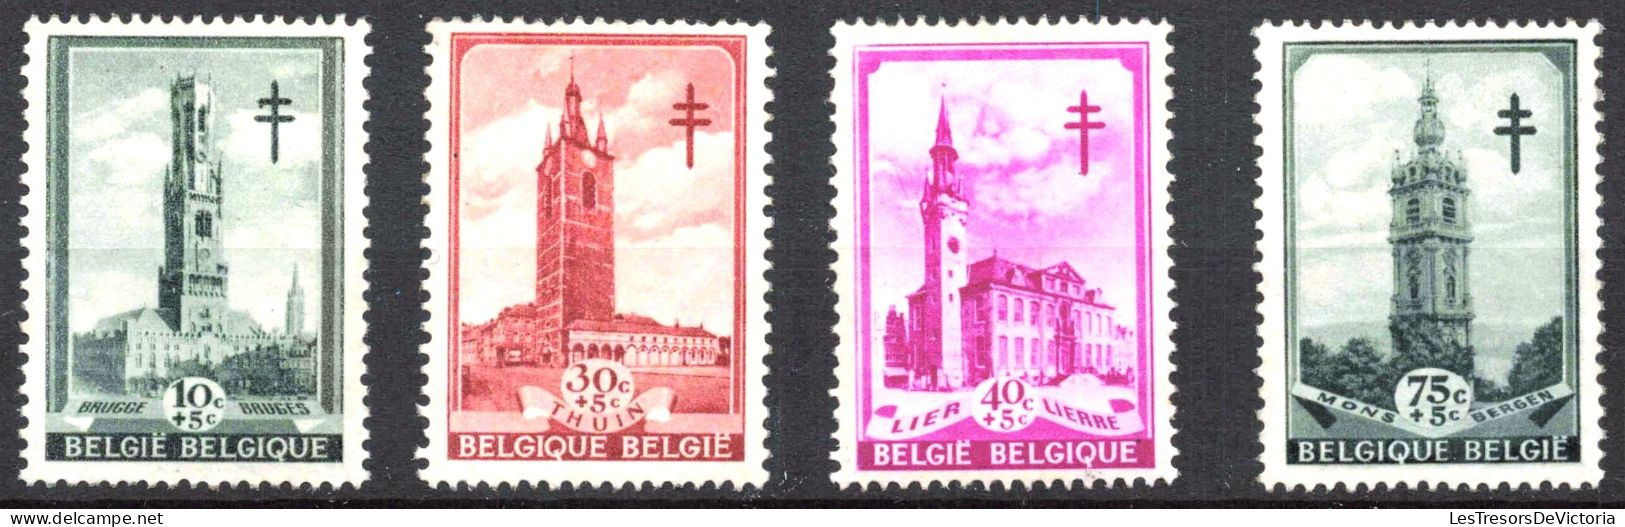 Timbre - Belgique - COB 519/26**MNH - Série Dite Les Beffrois - 1939 - Cote 65 - Neufs